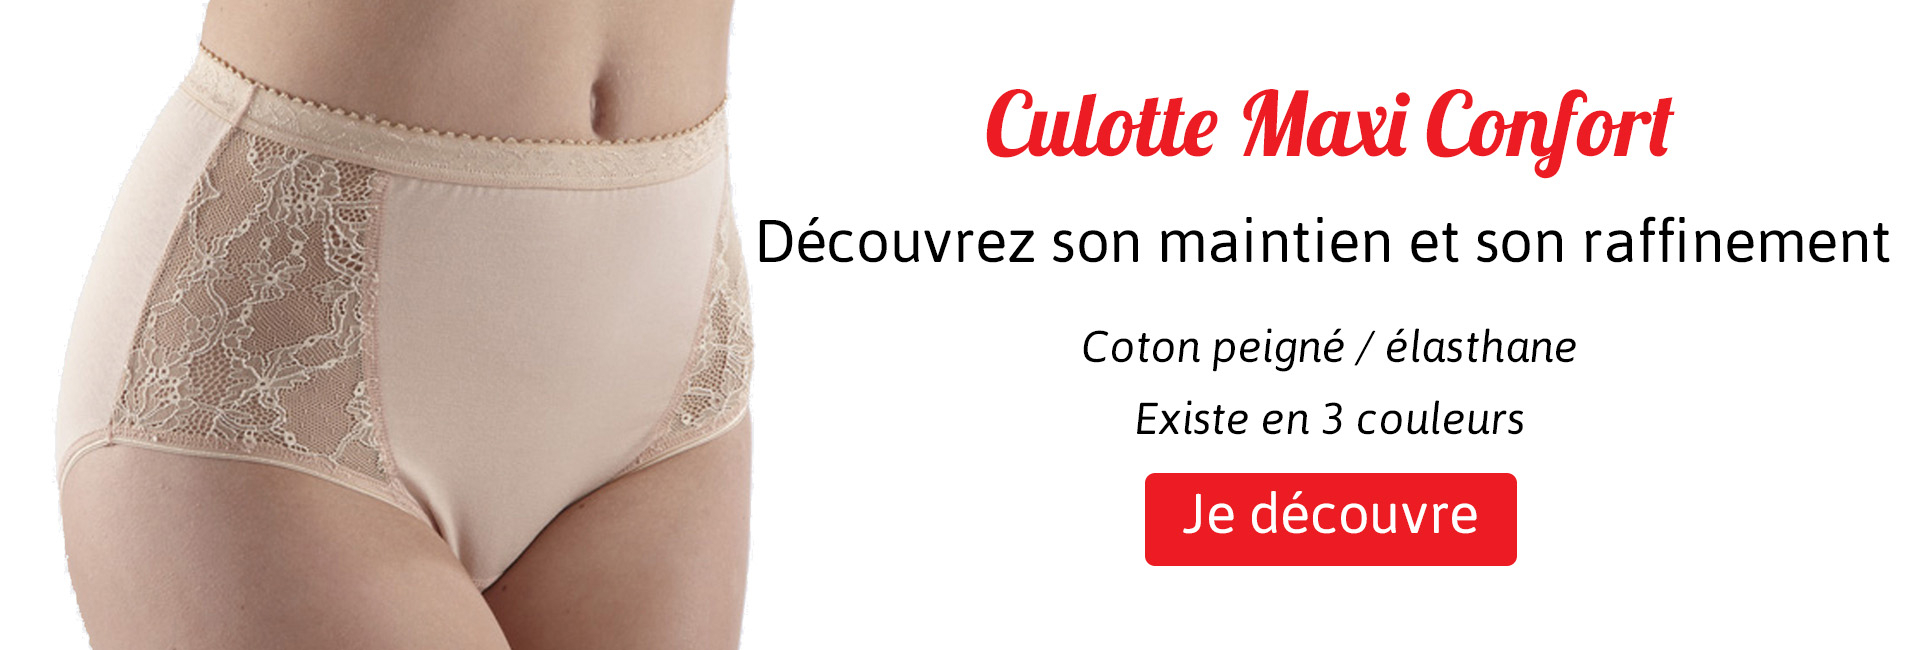 Culotte Maxi Confort